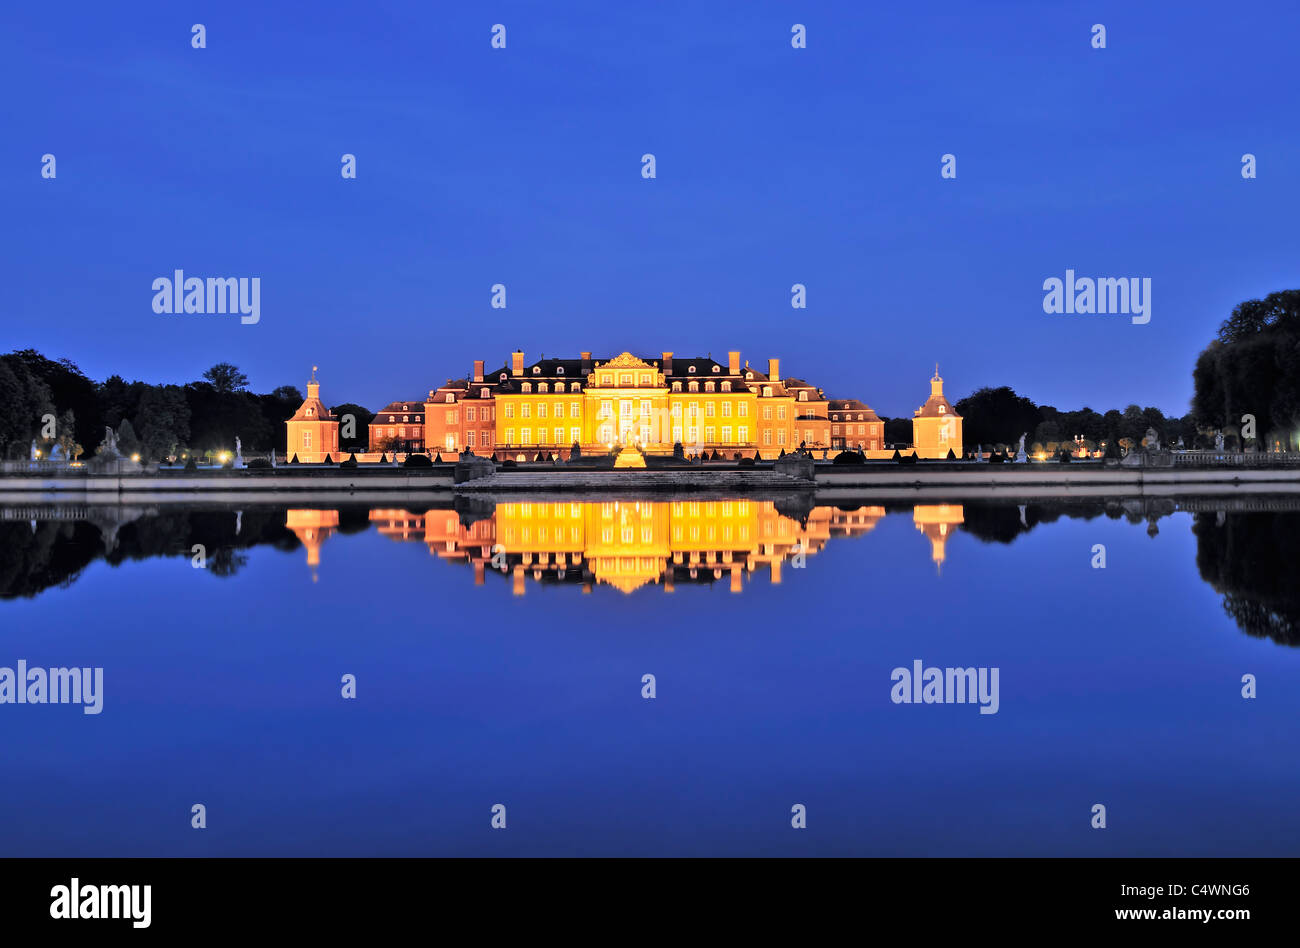 Photo de nuit du grand château d'eau en Westphalie, Allemagne, Nordkirchen. Banque D'Images